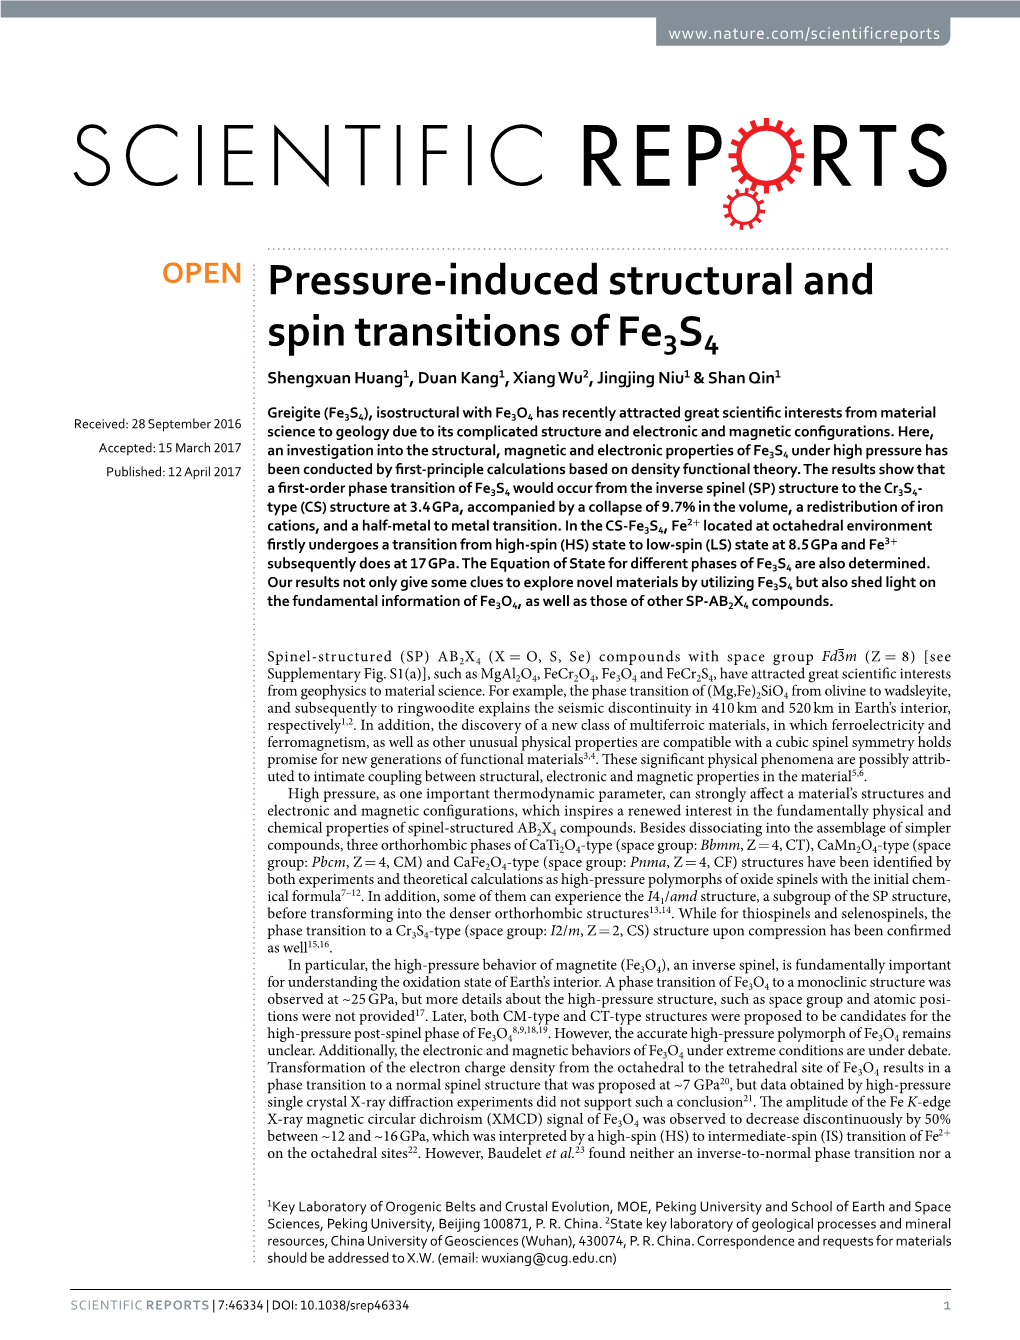 Pressure-Induced Structural and Spin Transitions of Fe3s4 Shengxuan Huang1, Duan Kang1, Xiang Wu2, Jingjing Niu1 & Shan Qin1